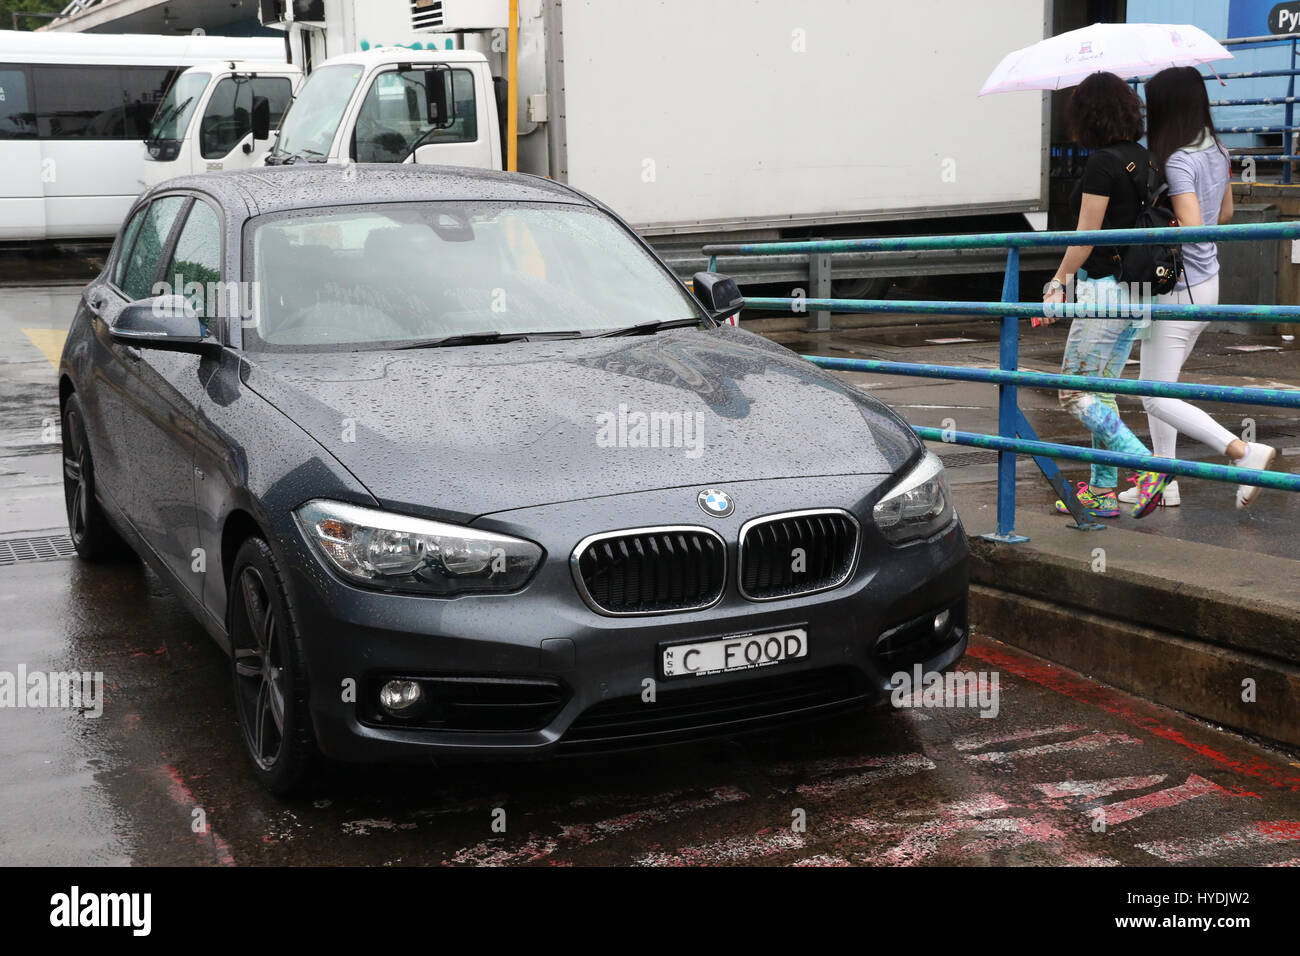 Ein BMW mit dem personalisierten Kennzeichen "C Food" Auto am Sydney Fischmarkt in Pyrmont an einem regnerischen Tag. Stockfoto